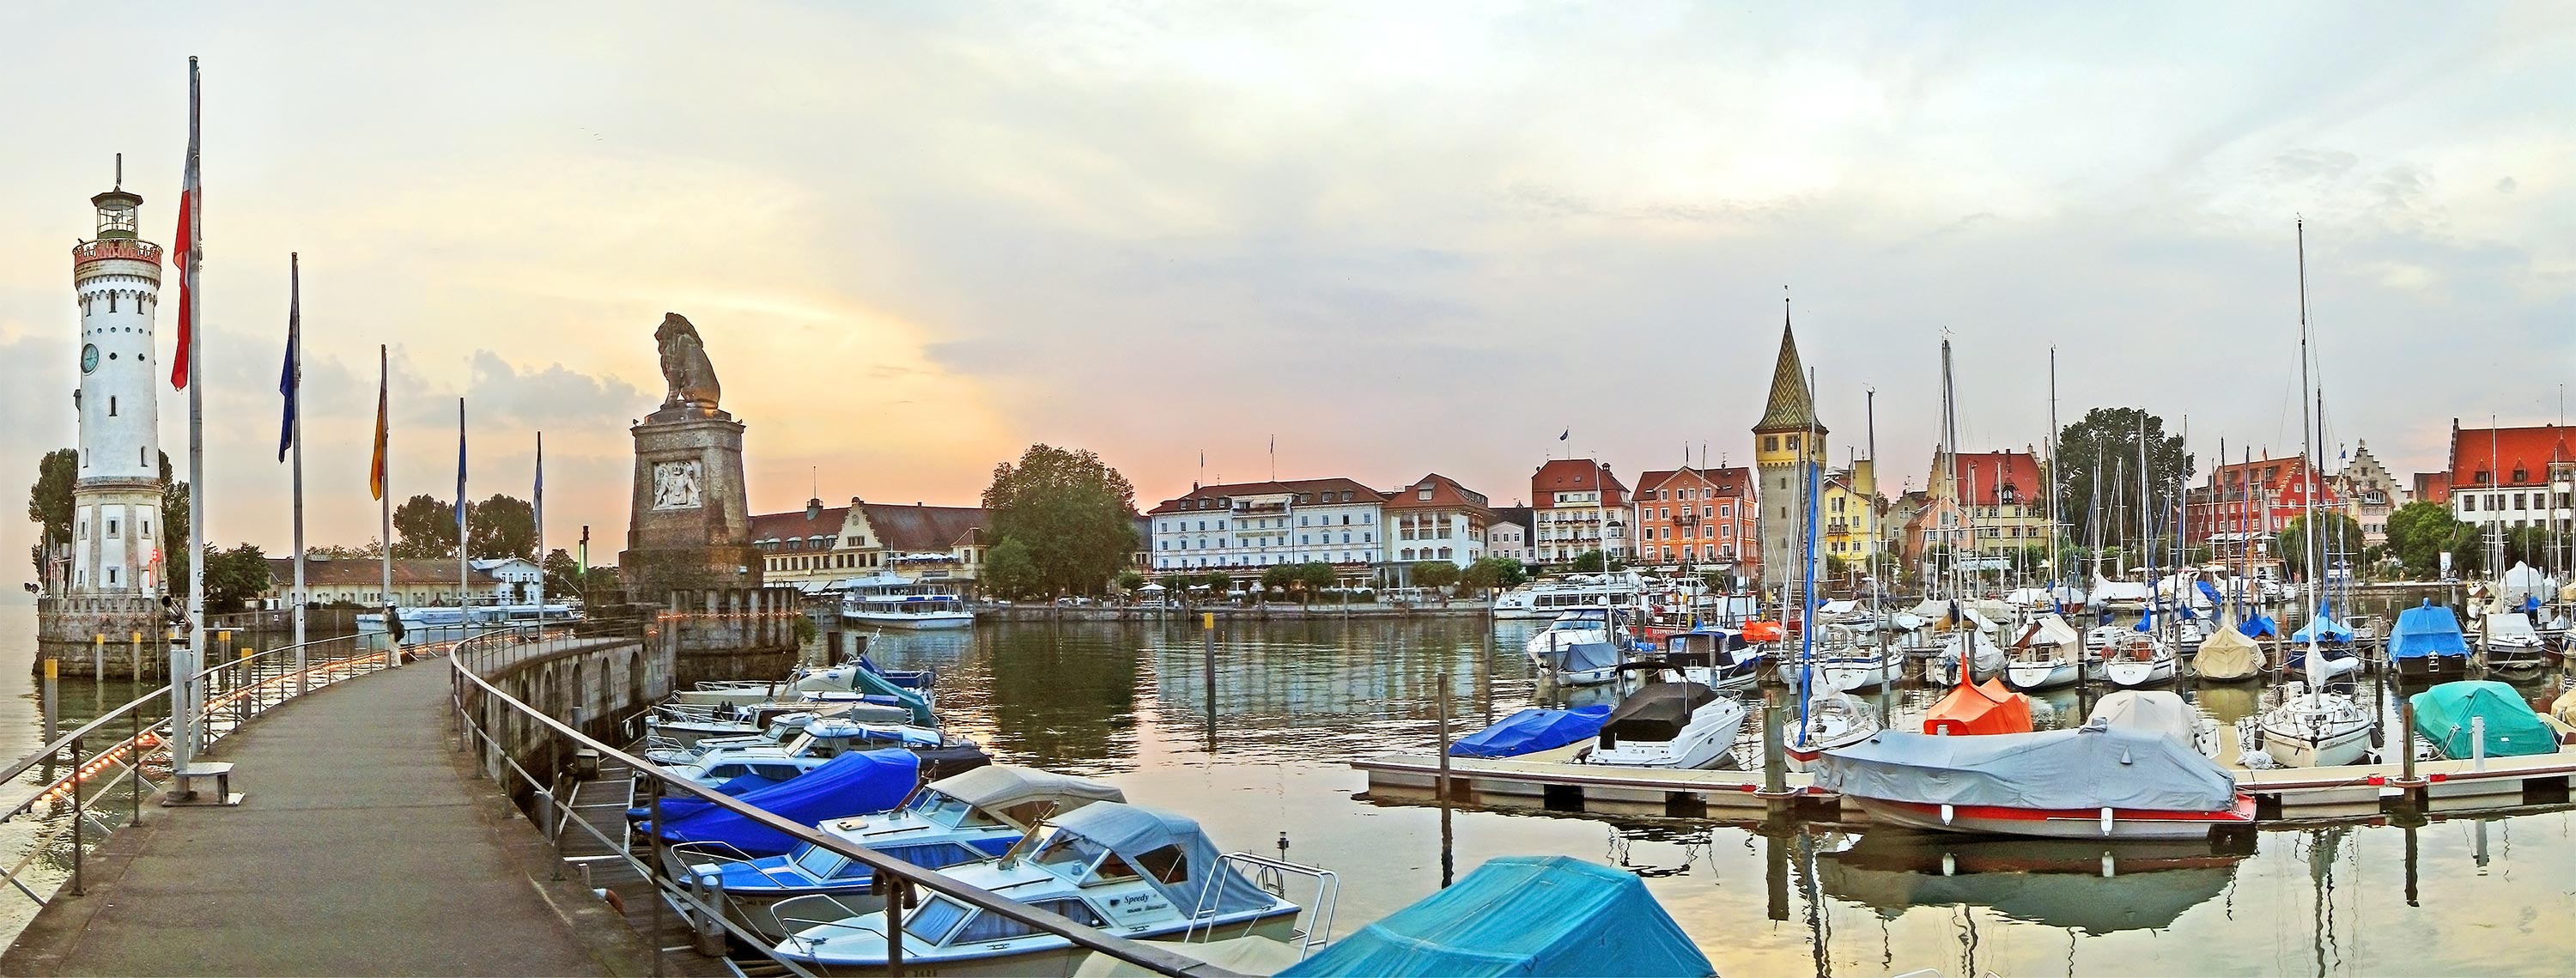 Lindau am Bodensee - Hafen mit Blick auf Neuen Leuchtturm und Lwen-Statue an der Hafeneinfahrt